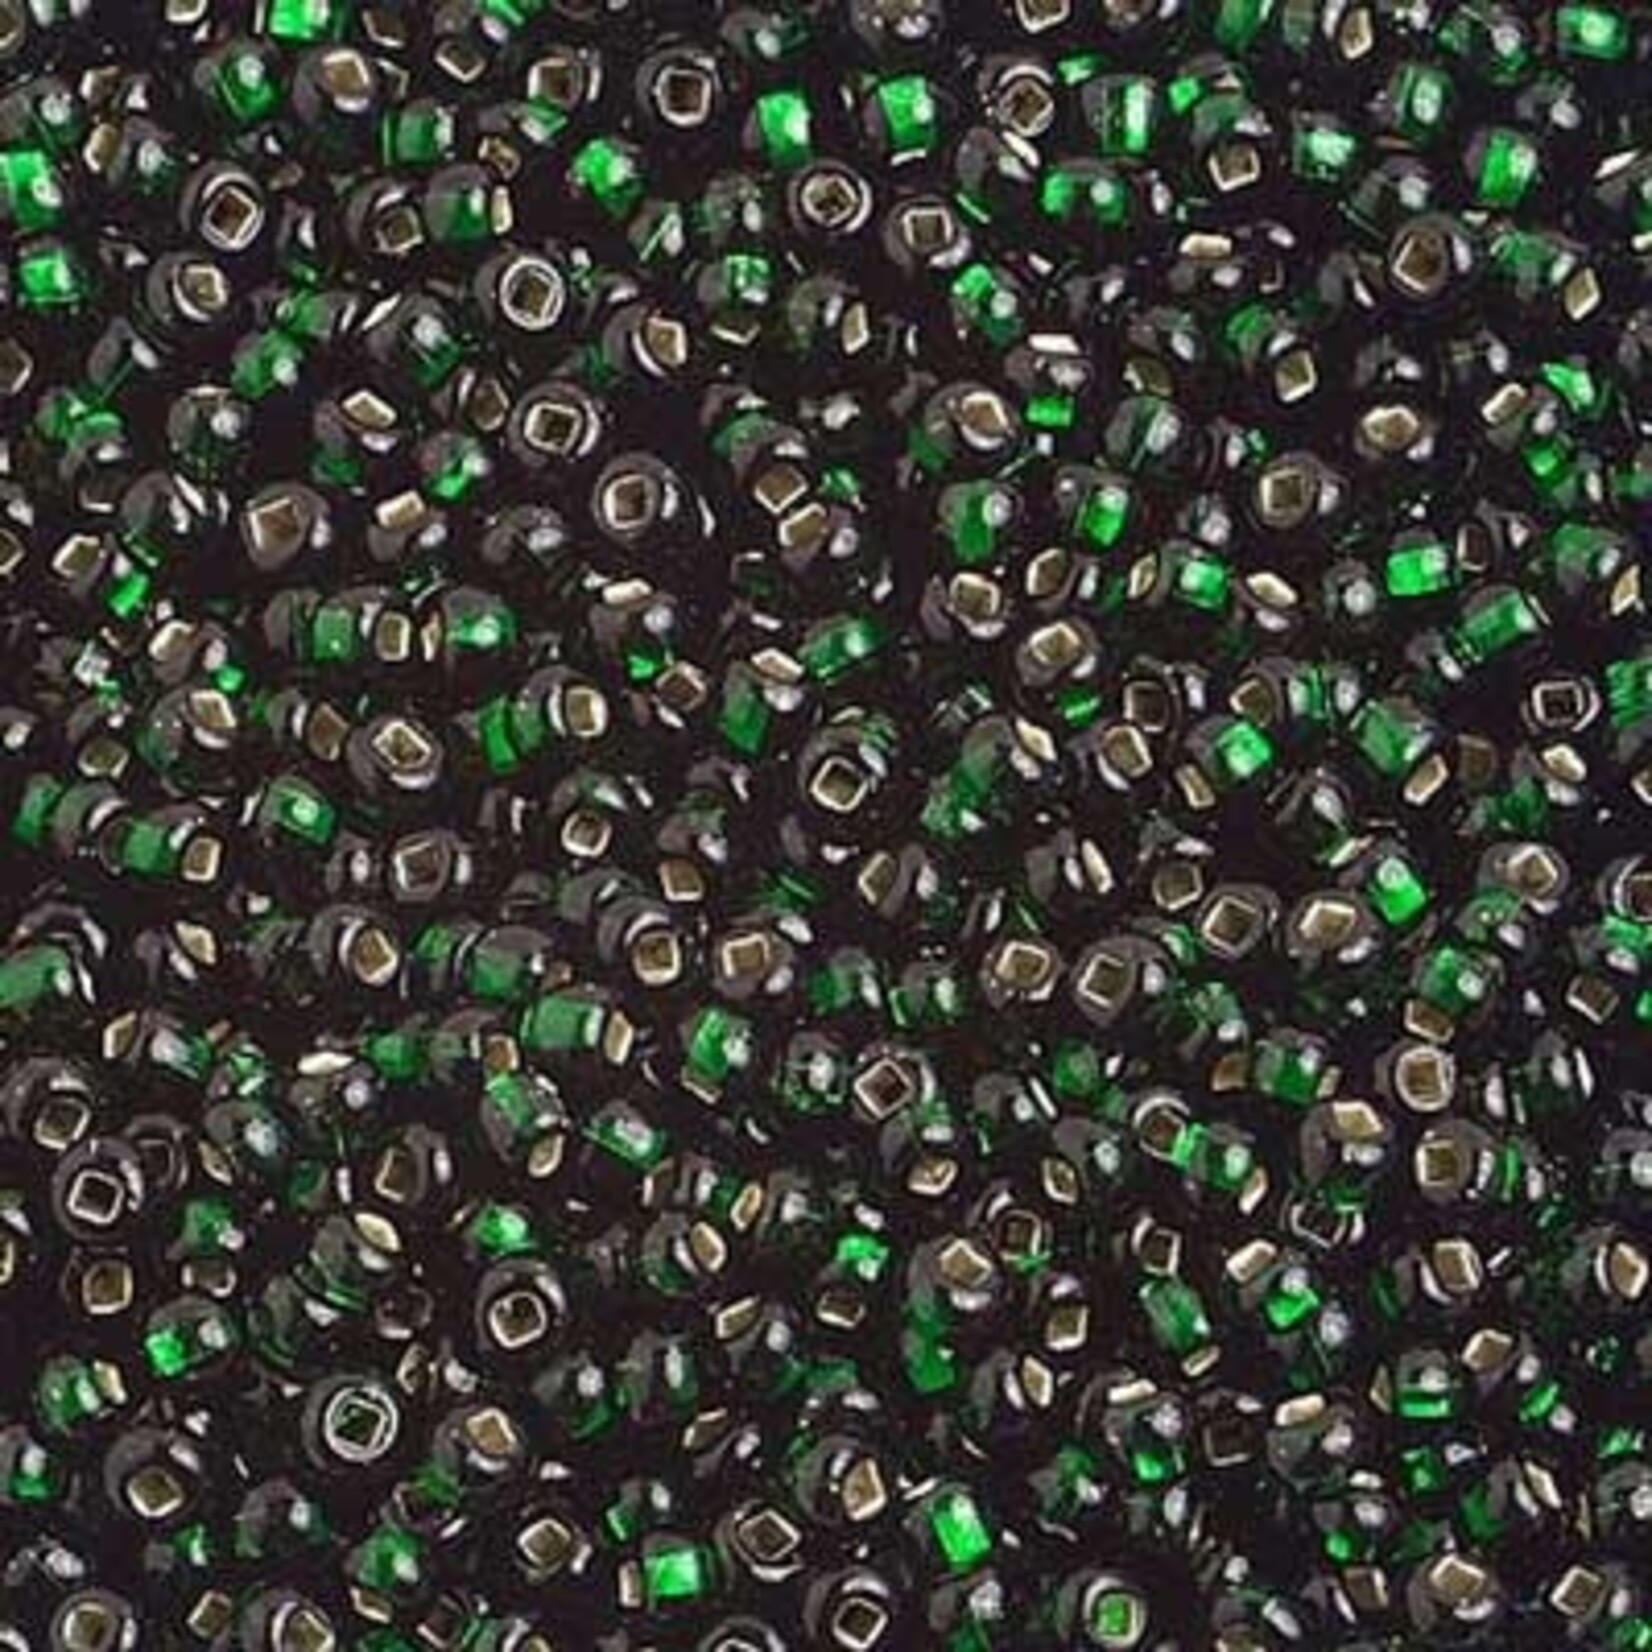 Seedbead (13 grams) Dark Green 10/0 Silverlined (S/L)